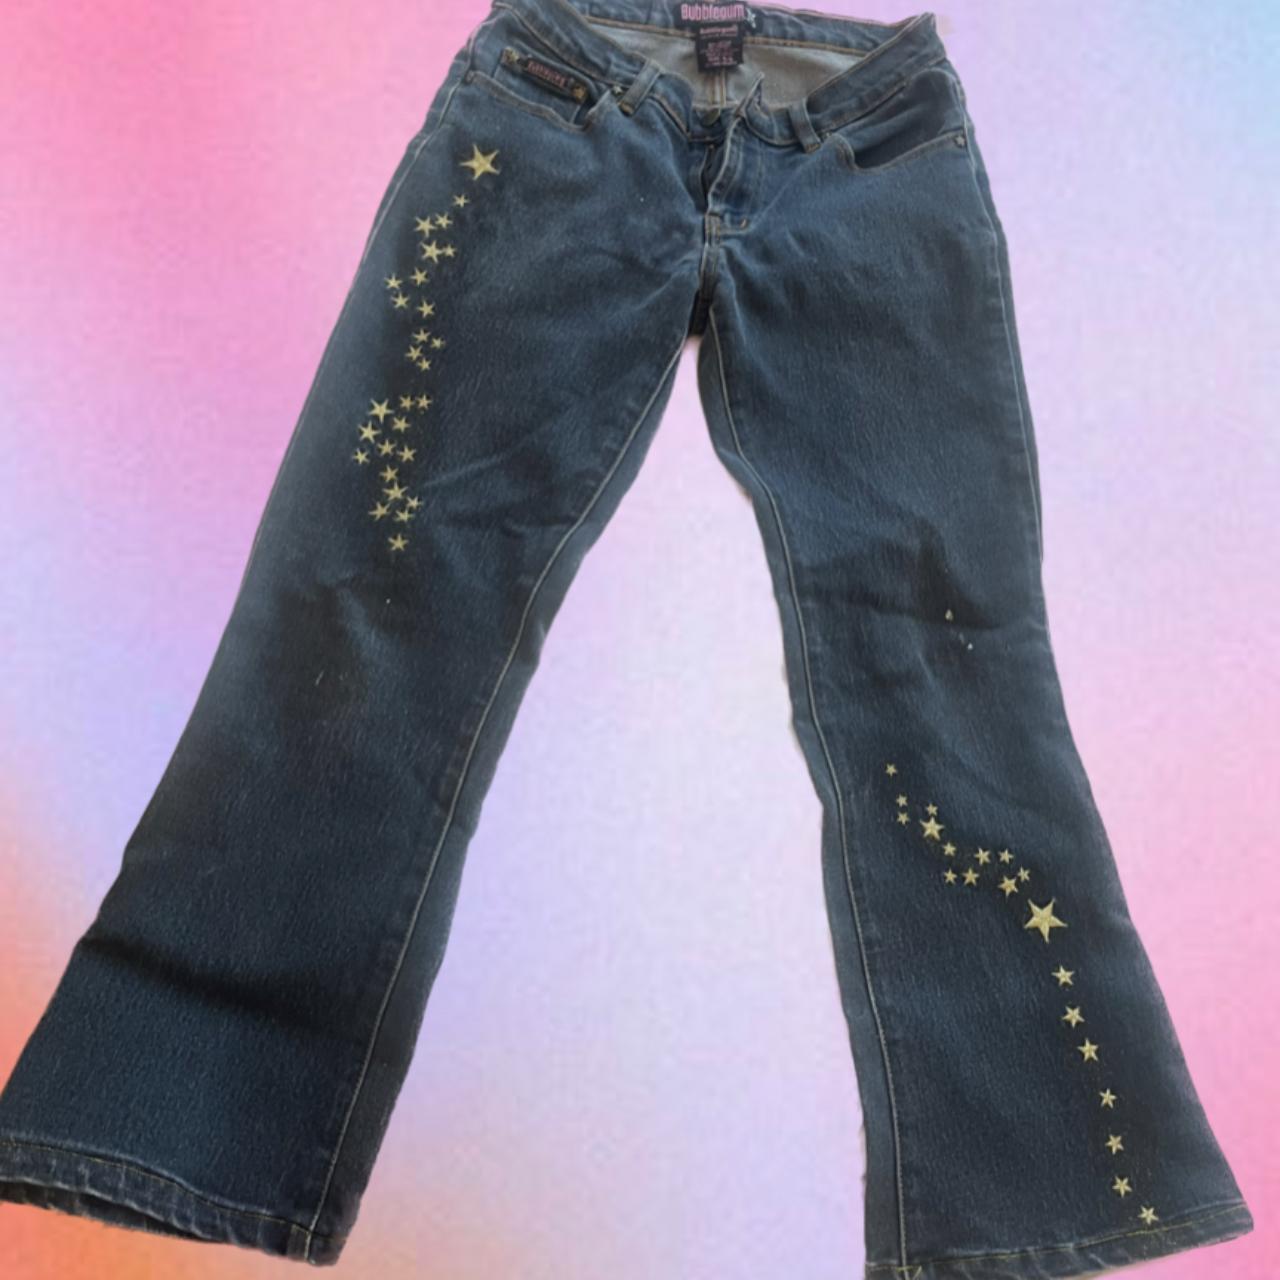 Sassy Shortcake Boutique Bubblegum Jeans •perfect - Depop